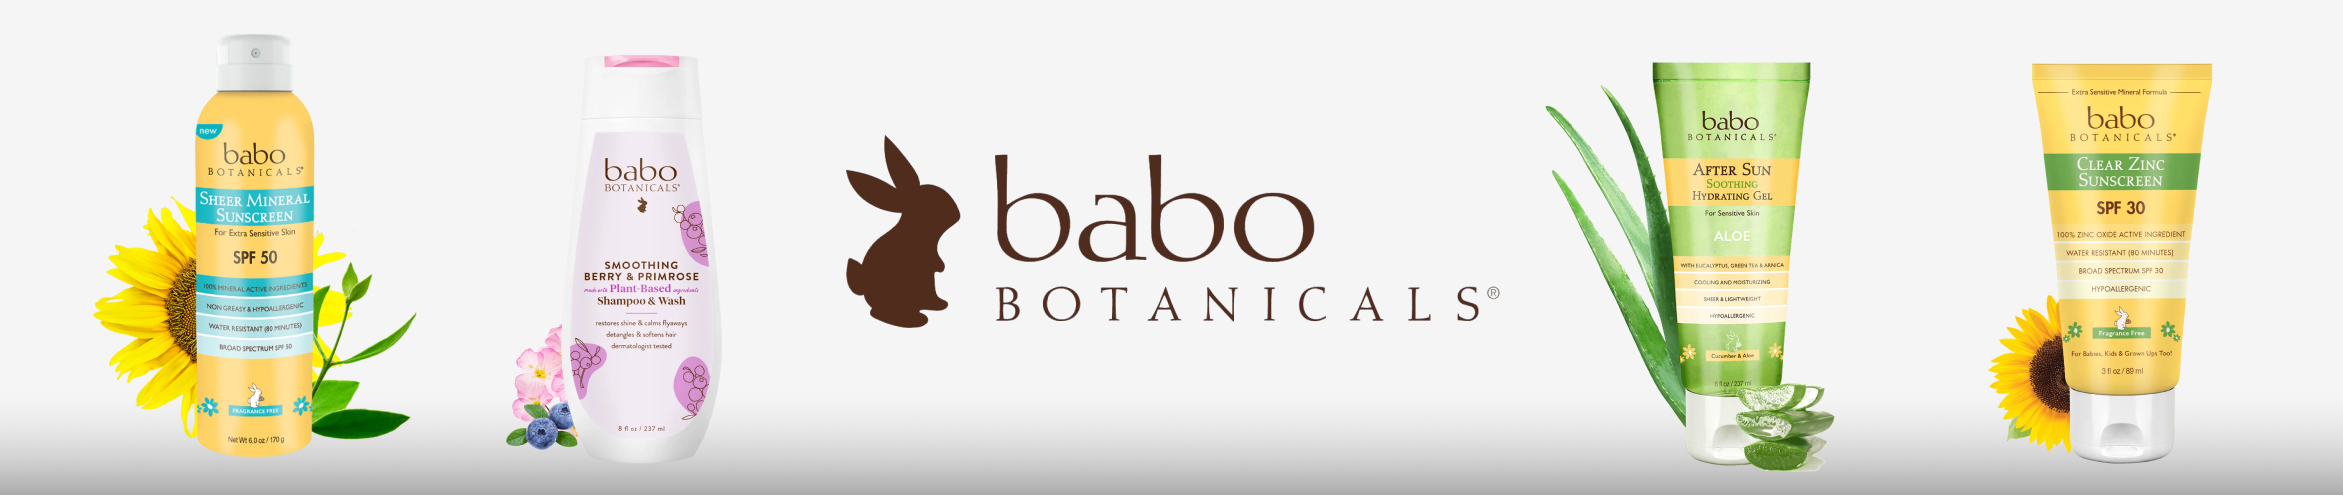 Babo Botanicals - Bath Soaks & Bubble Bath